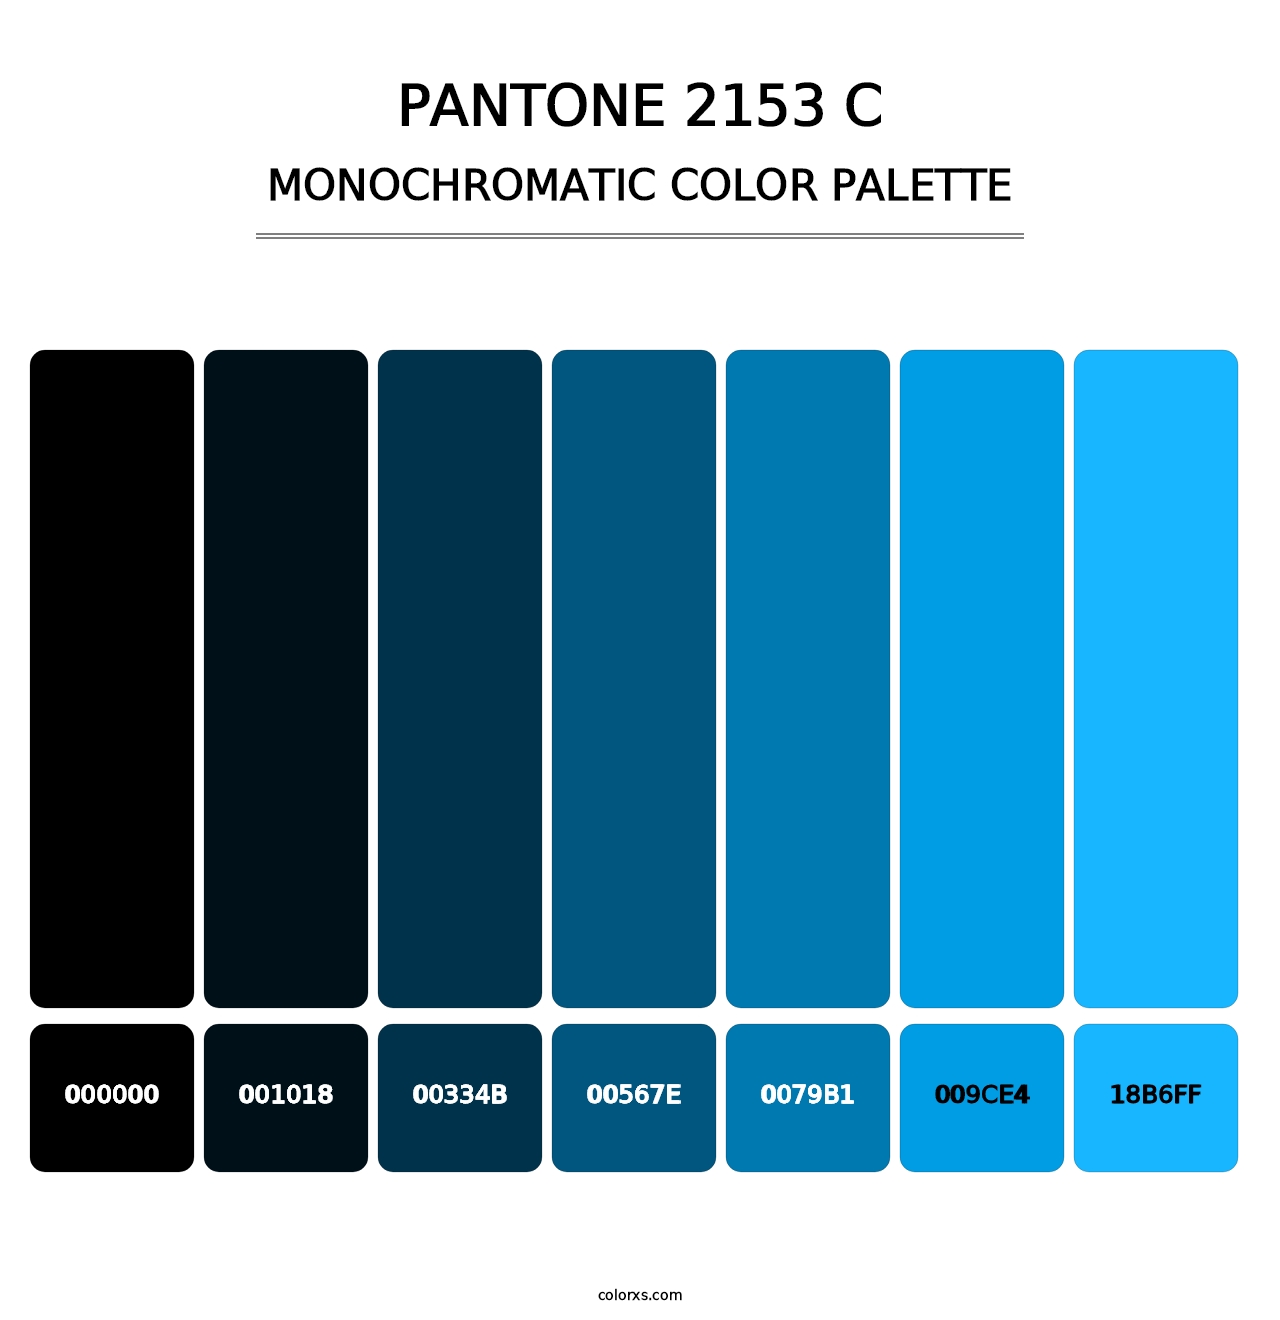 PANTONE 2153 C - Monochromatic Color Palette